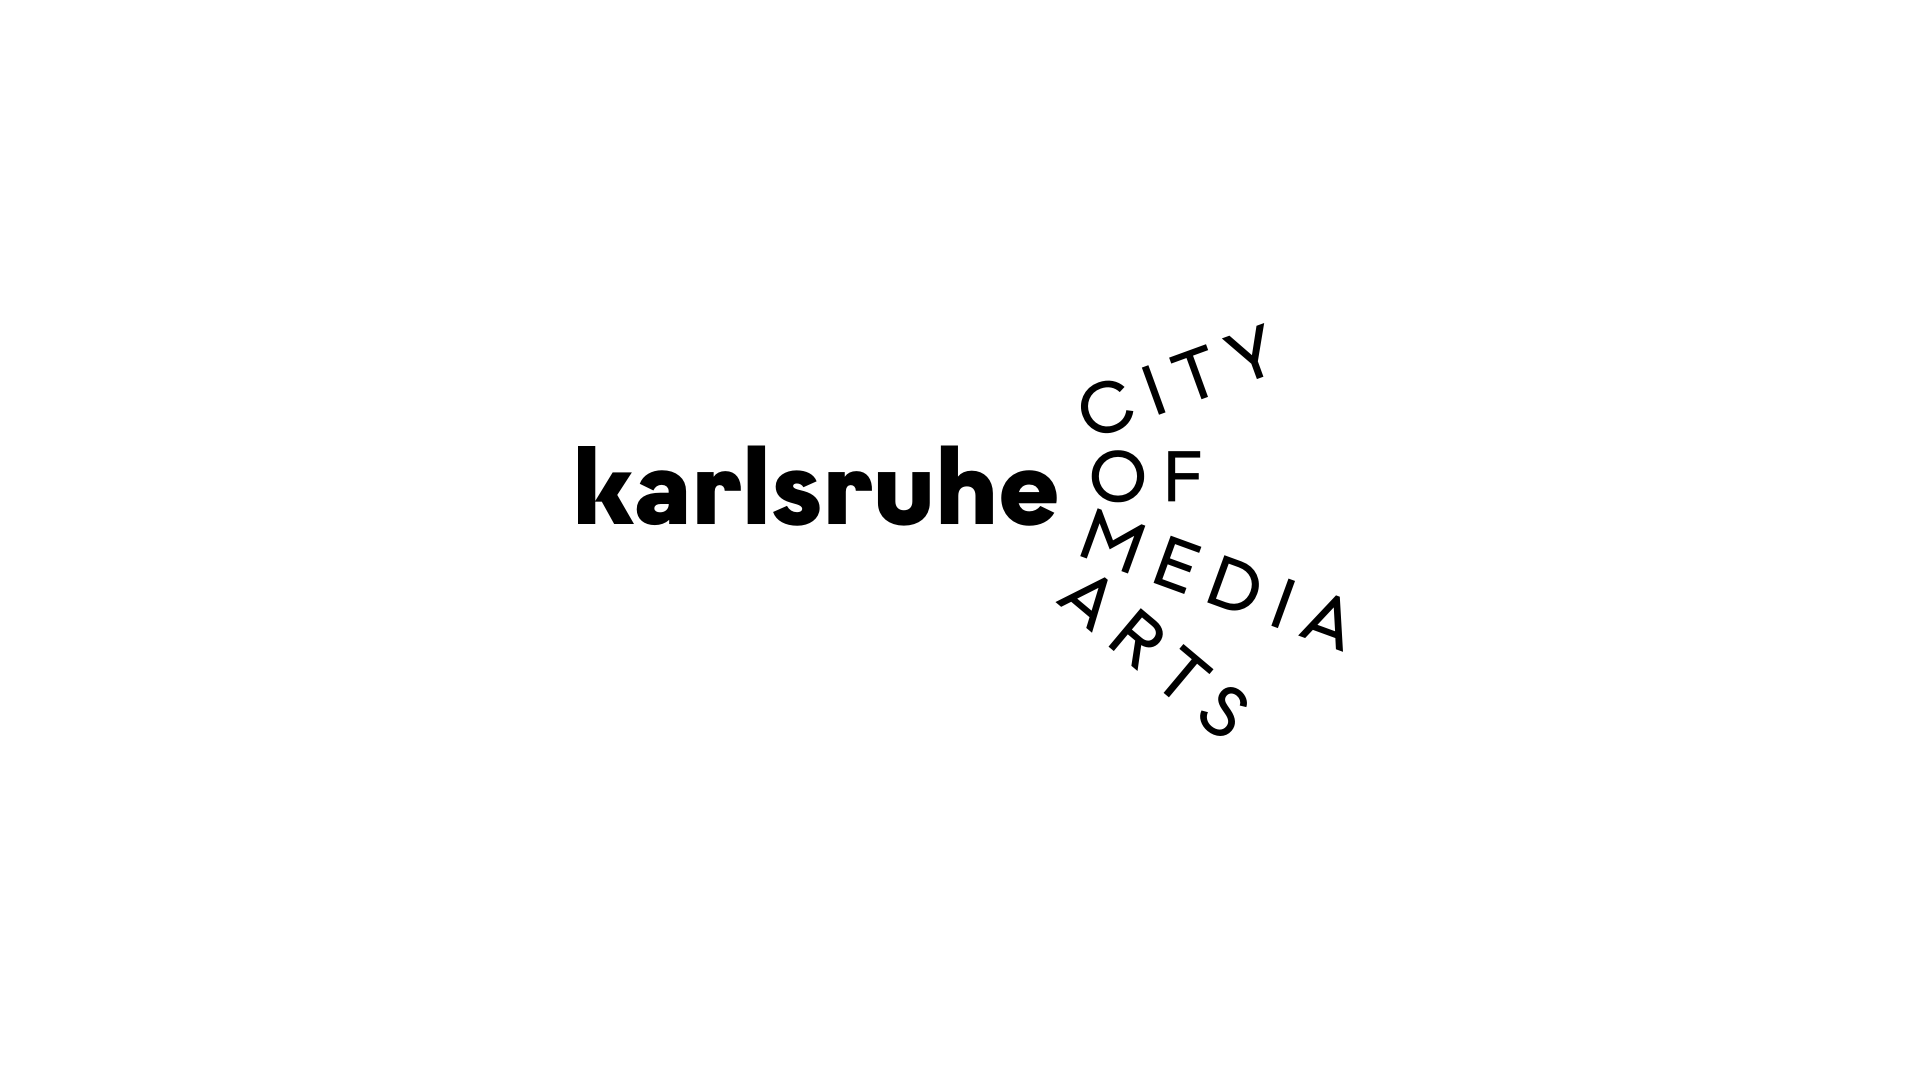 Karlsruhe City of Media Art, Layout zum Thema Fächerstadt